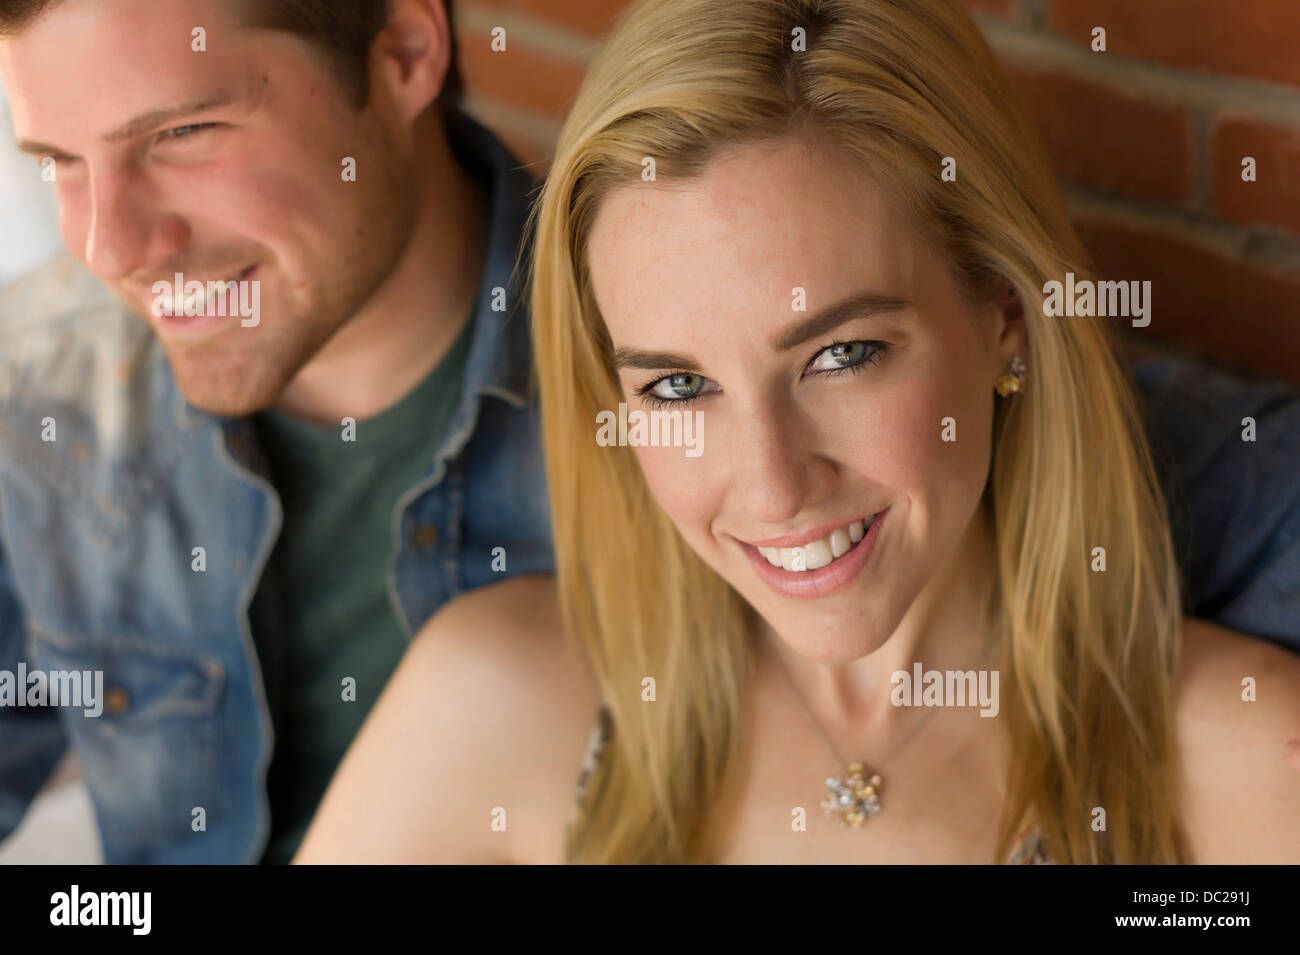 Porträt des Paares, lächelnde junge Frau im Mittelpunkt Stockfoto